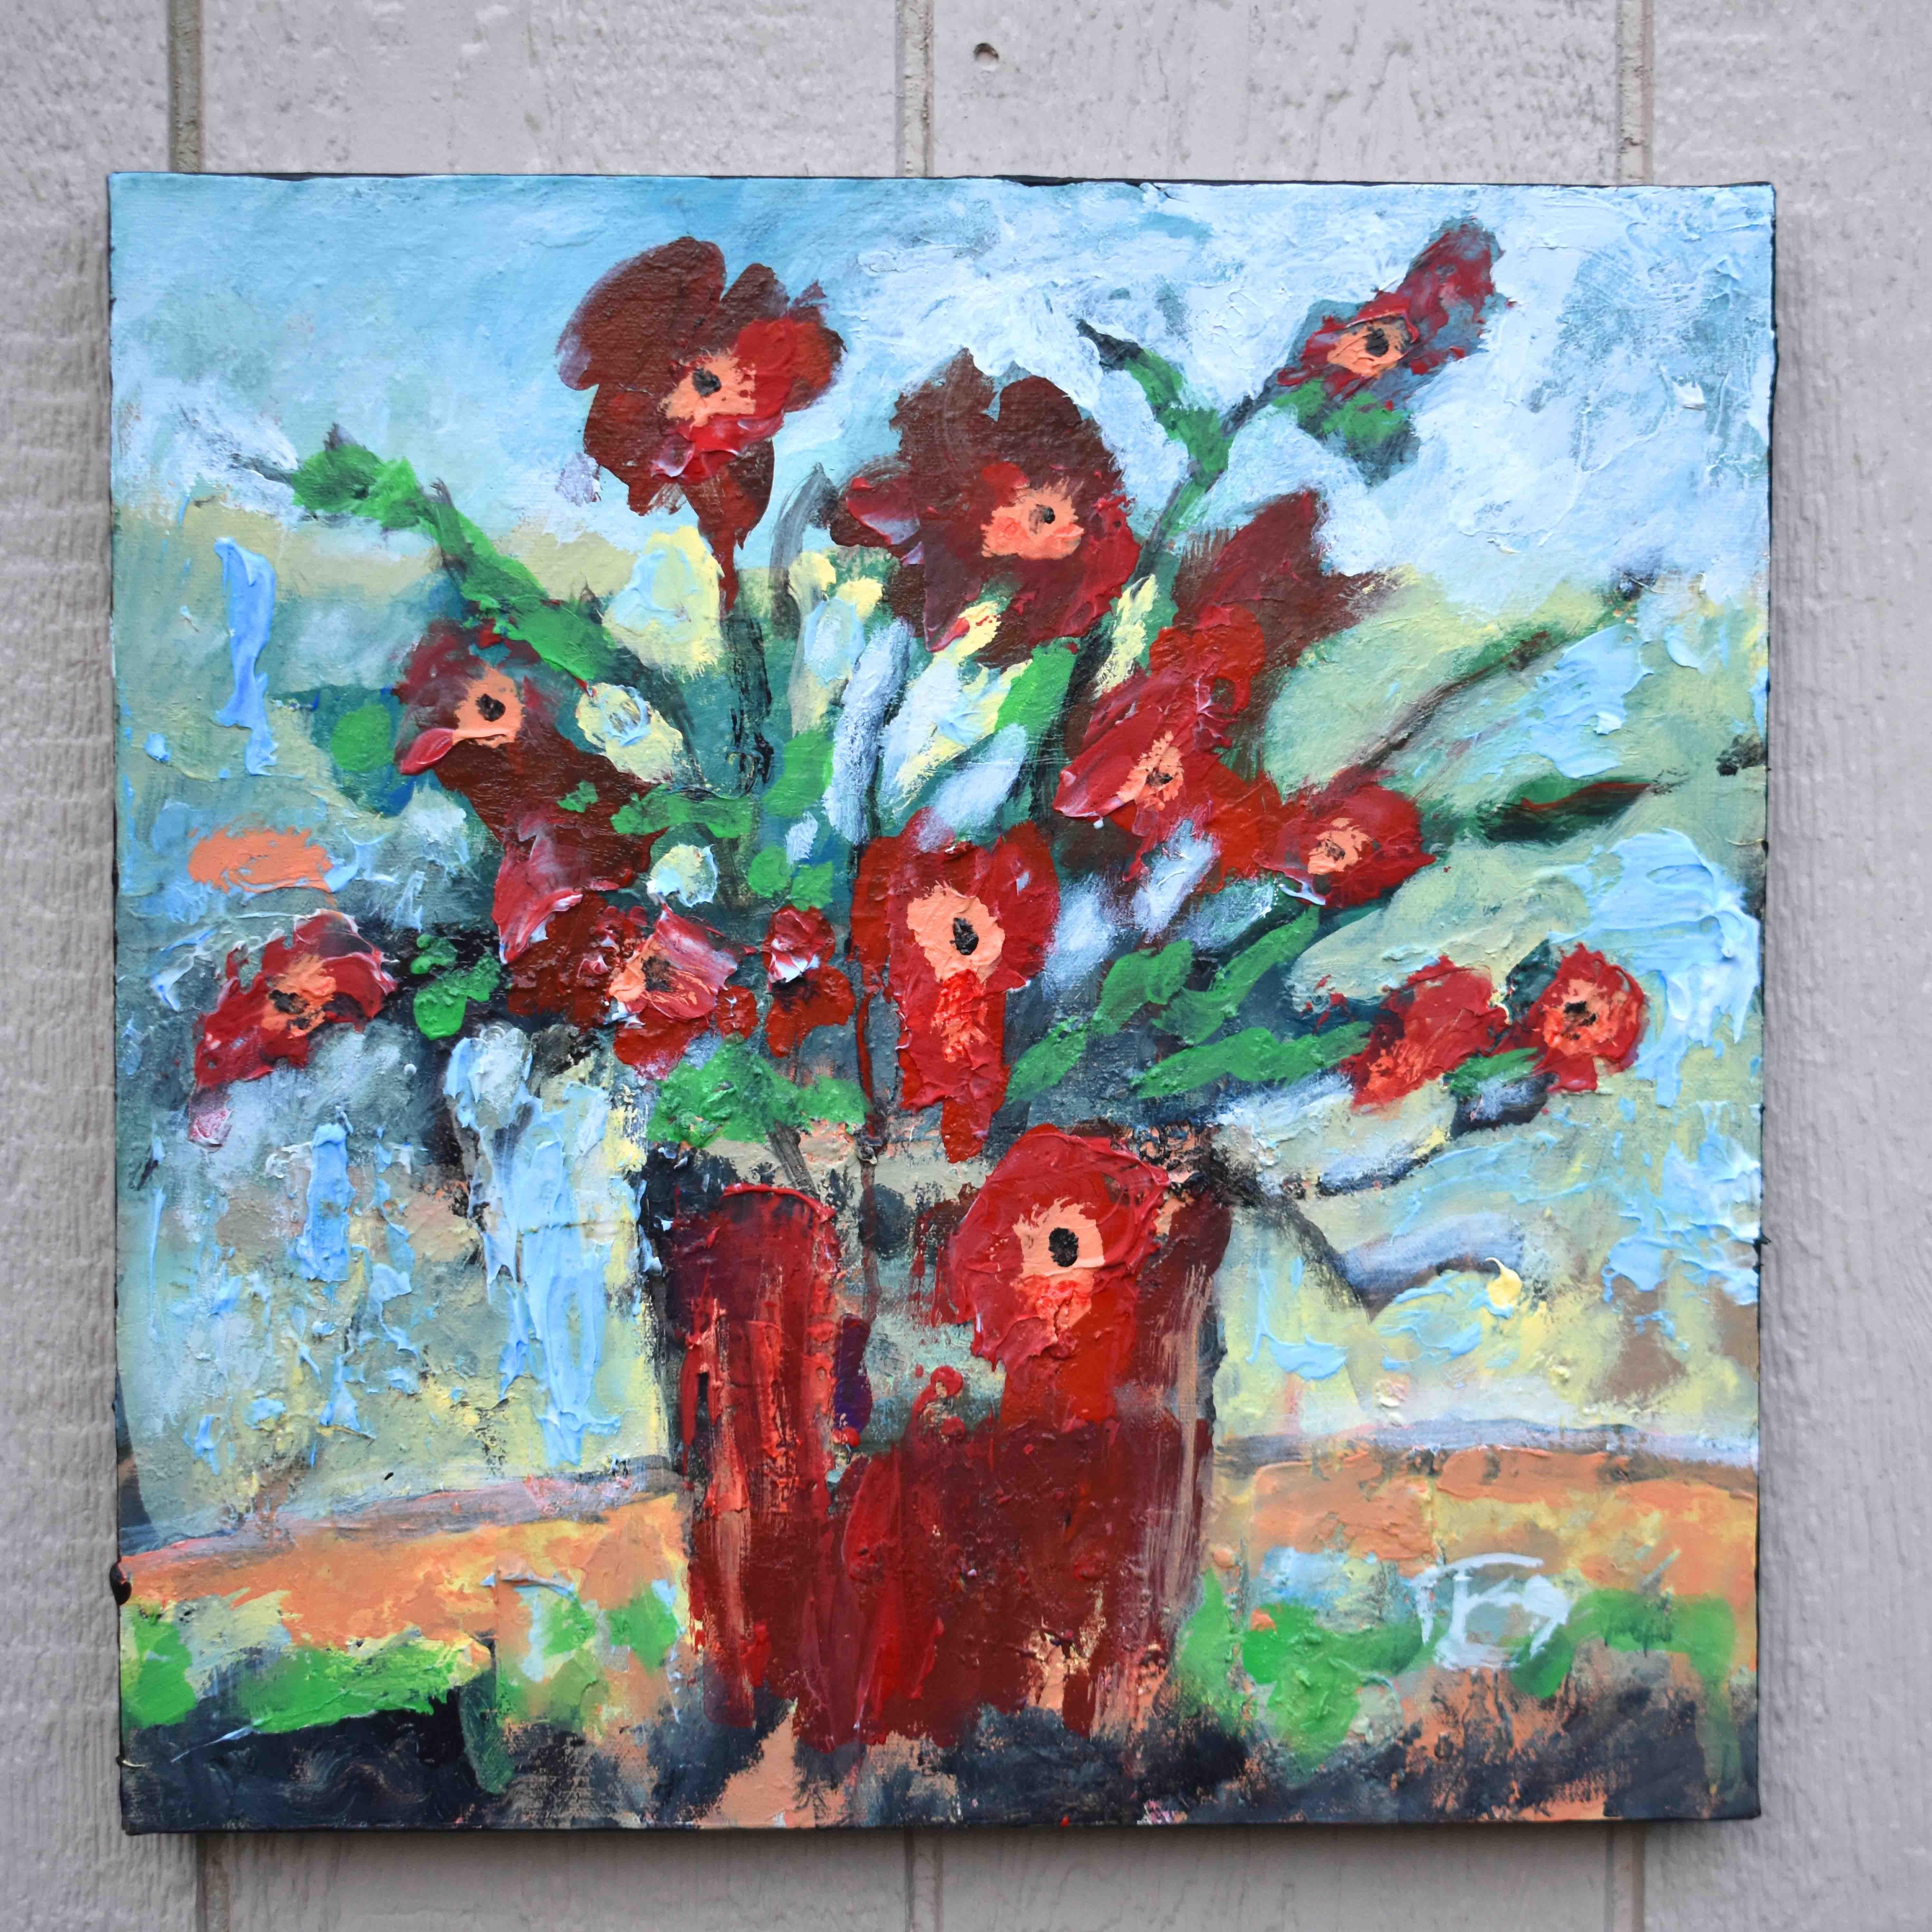 <p>Kommentare des Künstlers<br>Der Künstler Kip Decker stellt einen atemberaubenden Strauß roter Blumen mit einem expressionistischen Ansatz dar. Die dunkelkarmesinroten Blütenblätter entfachen ein brennendes Gefühl von zarter Romantik. Kip